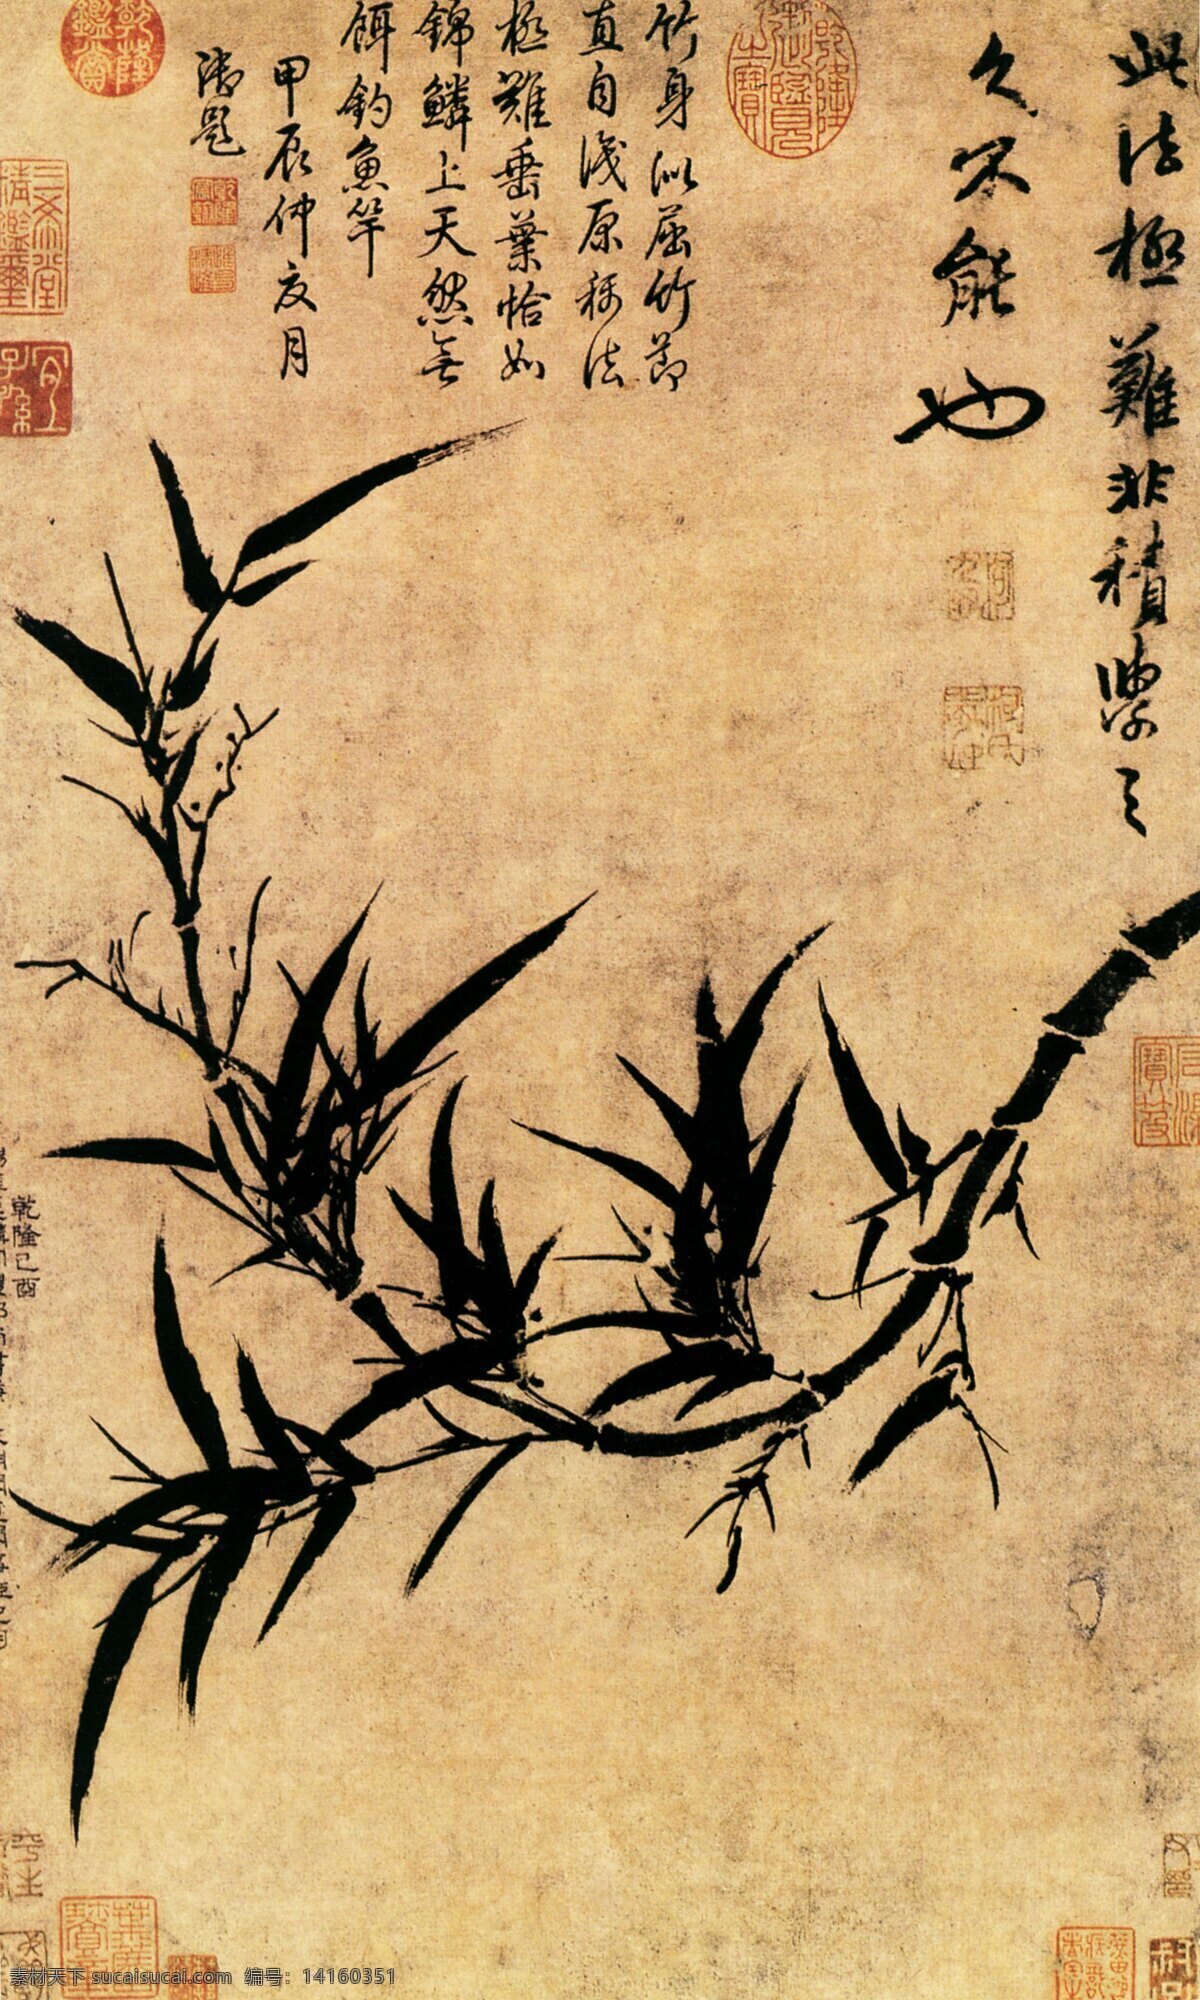 中国 传世 名画 花鸟画 竹子 中国传世名画 古典花鸟画 文化艺术